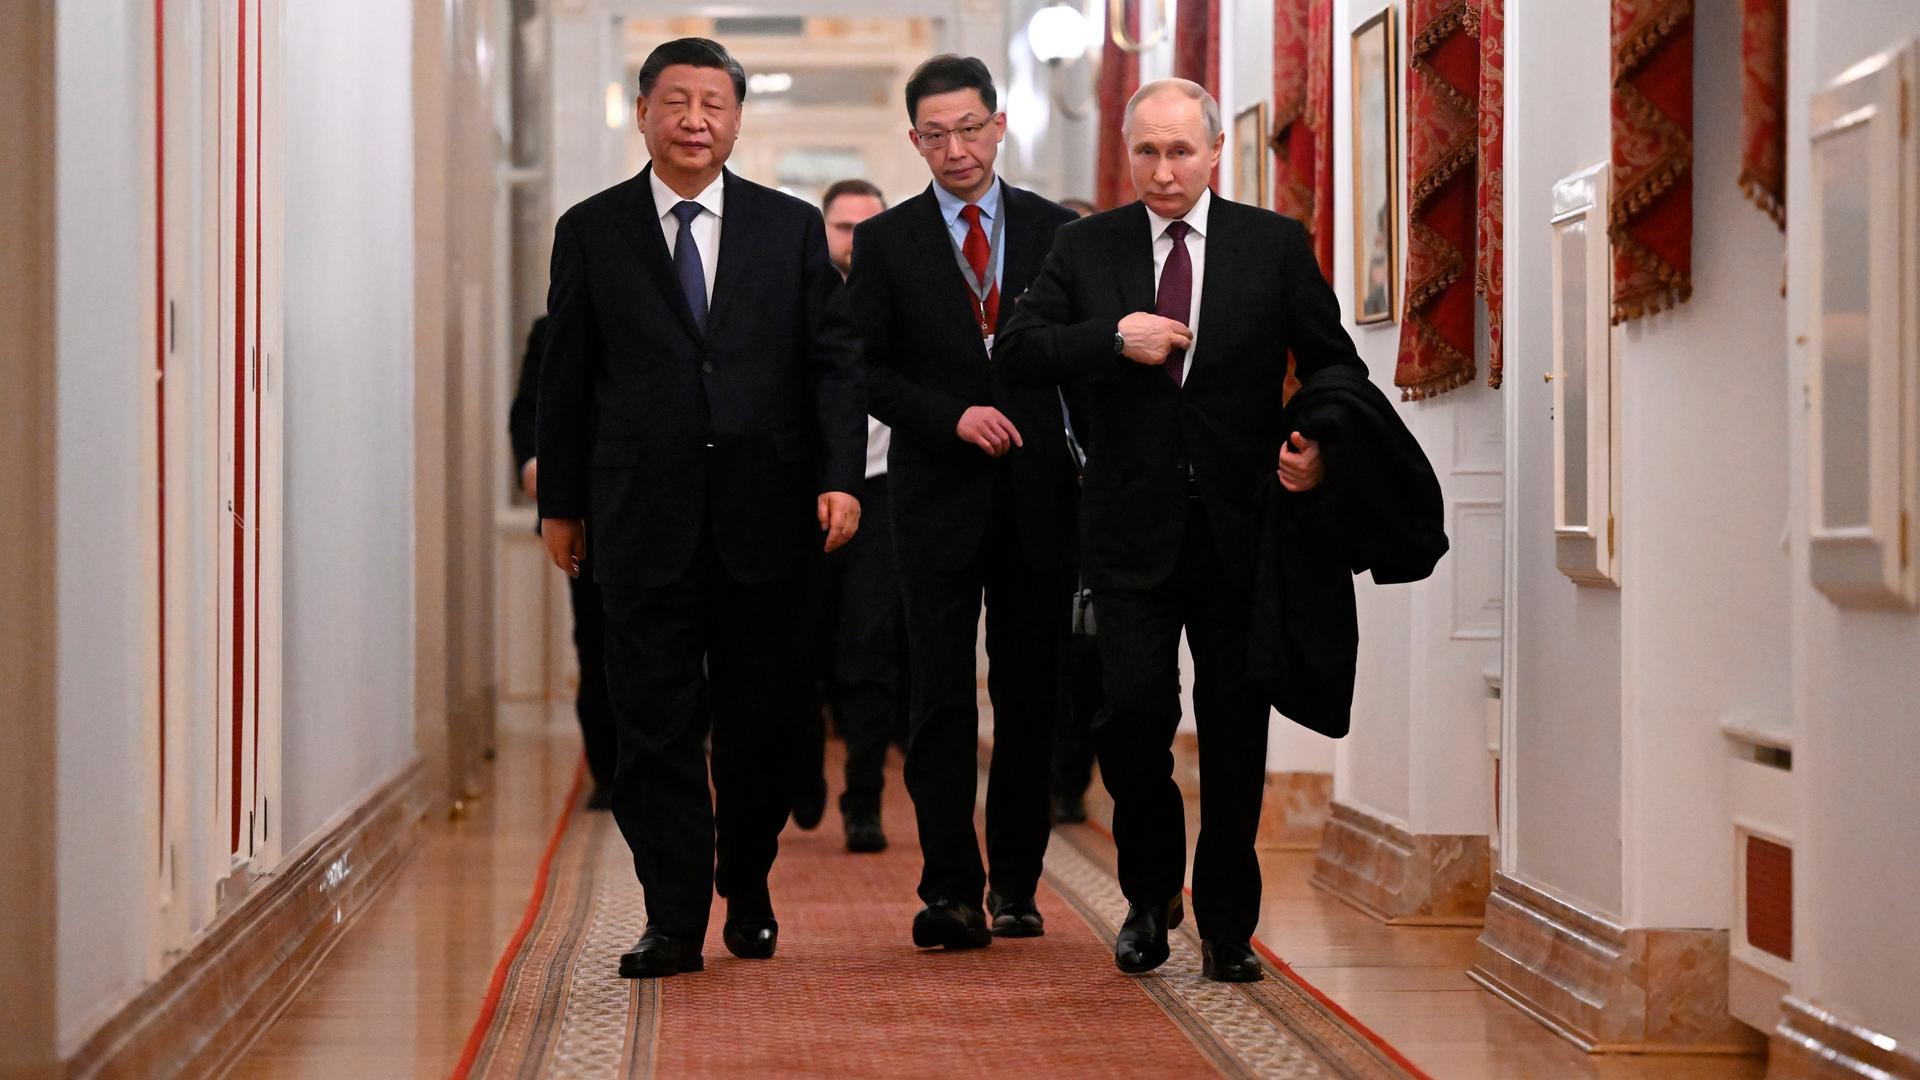 Der chinasische Staatspräsident Xi Jinping und Russlands Präsident Wladimir Putin gehen einen Flur entlang (Aufnahmedatum 20.3.2023).